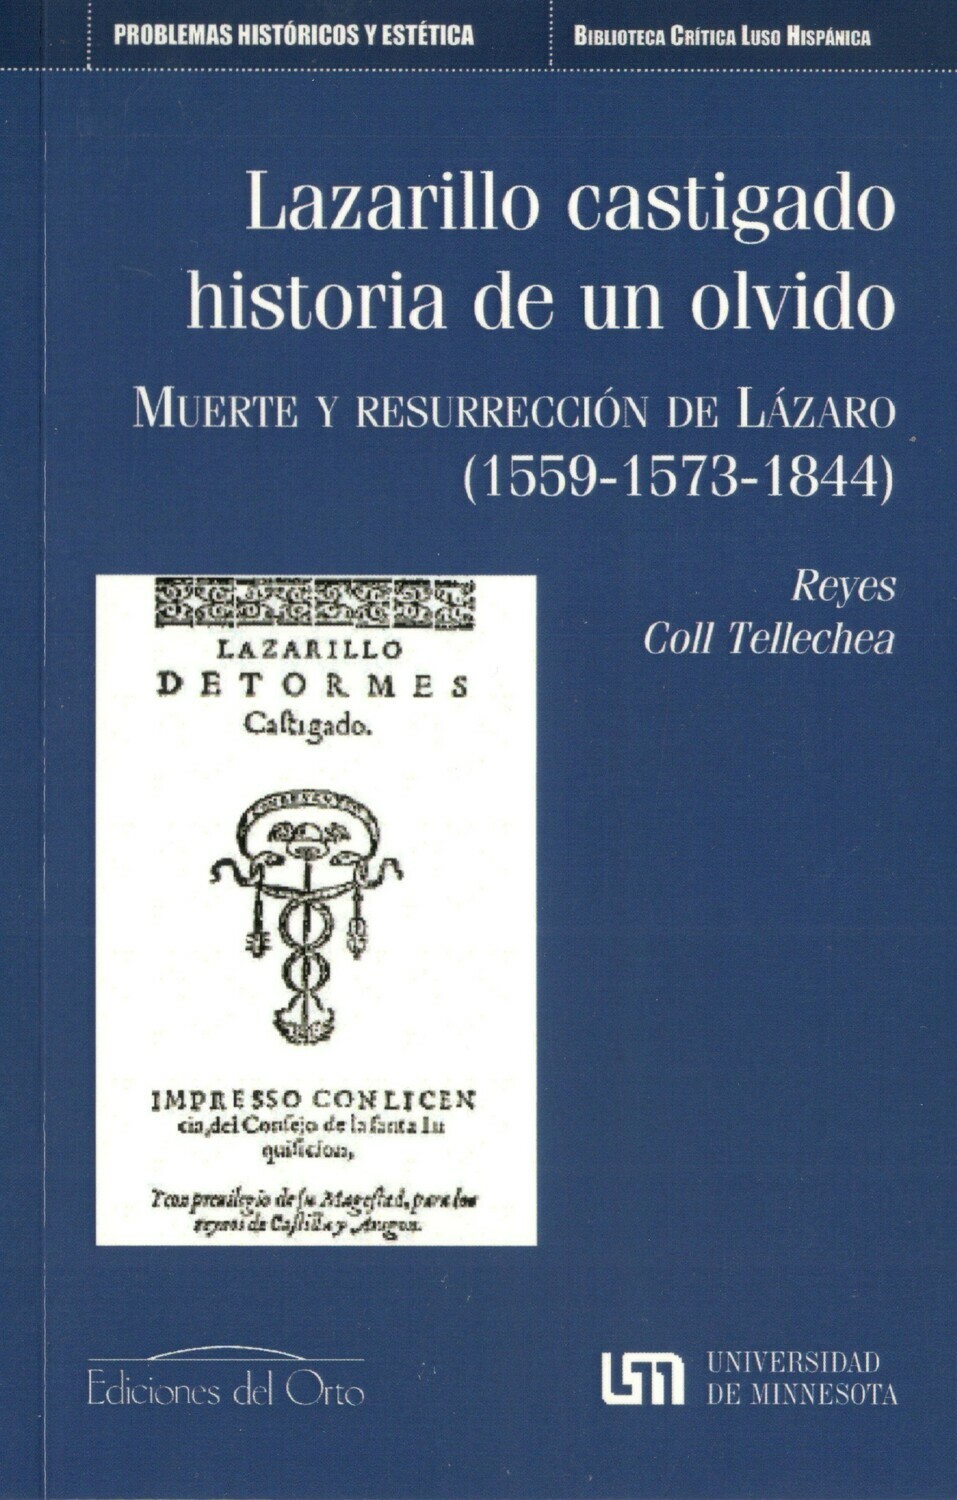 LAZARILLO CASTIGADO: HISTORIA DE UN OLVIDO. MUERTE Y RESURRECCION DE LAZARO (1559-1573-1844)